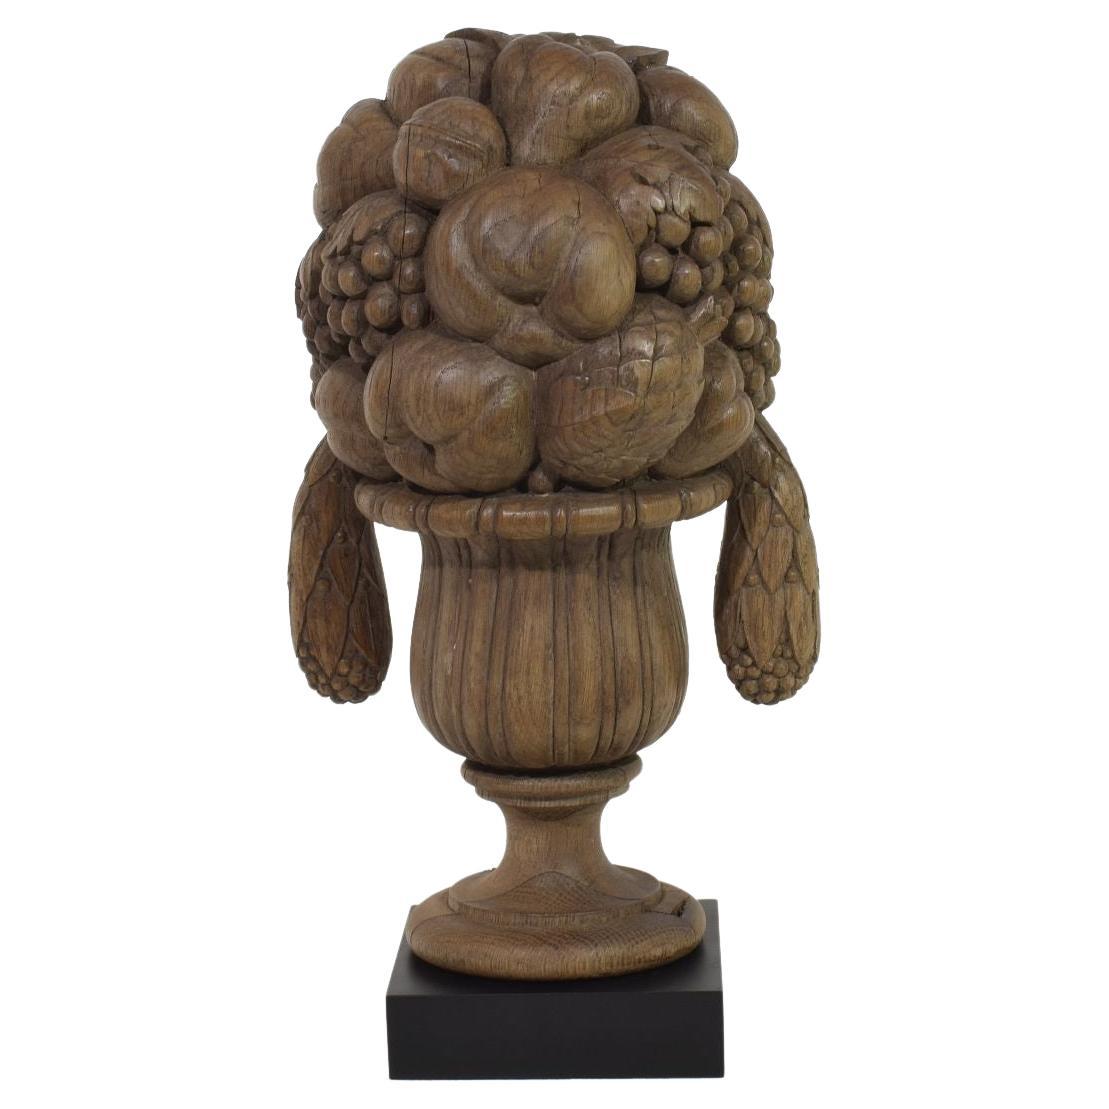 Vase en chêne néoclassique français du début du 19e siècle, sculpté à la main, ornement / épi de faîtage